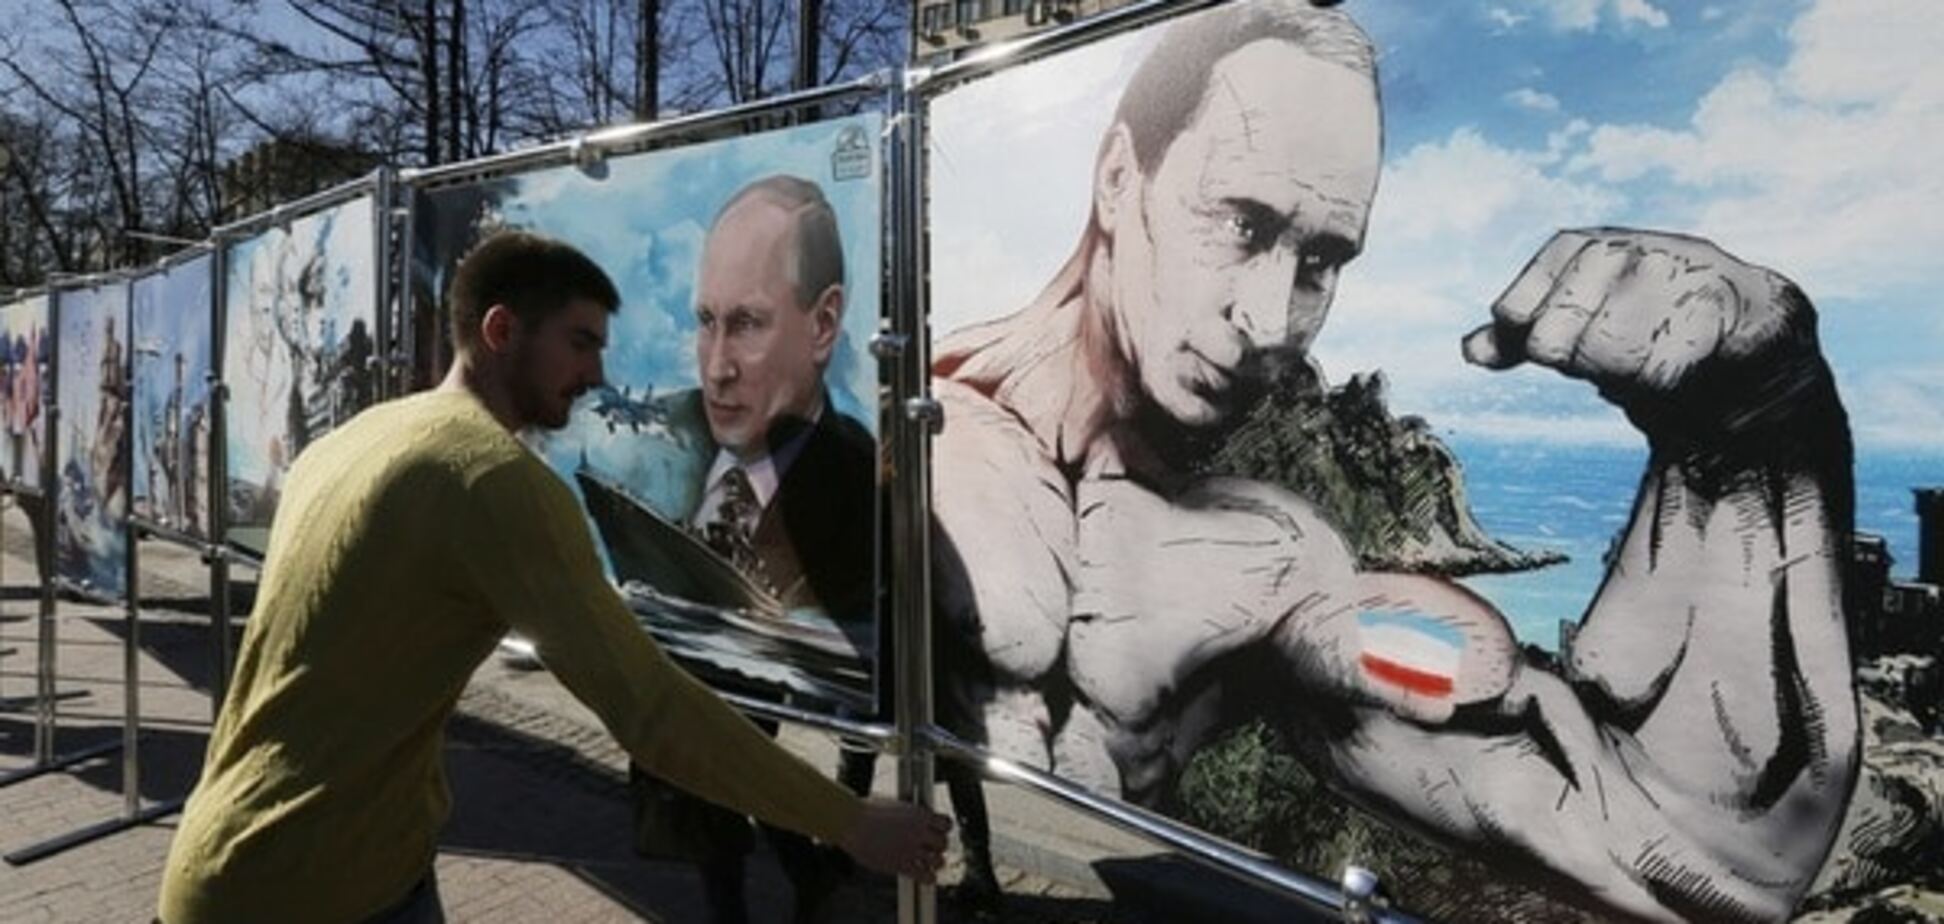 'Крымнашизм' вовлек Россию в ловушку с драматическими последствиями - политолог из РФ